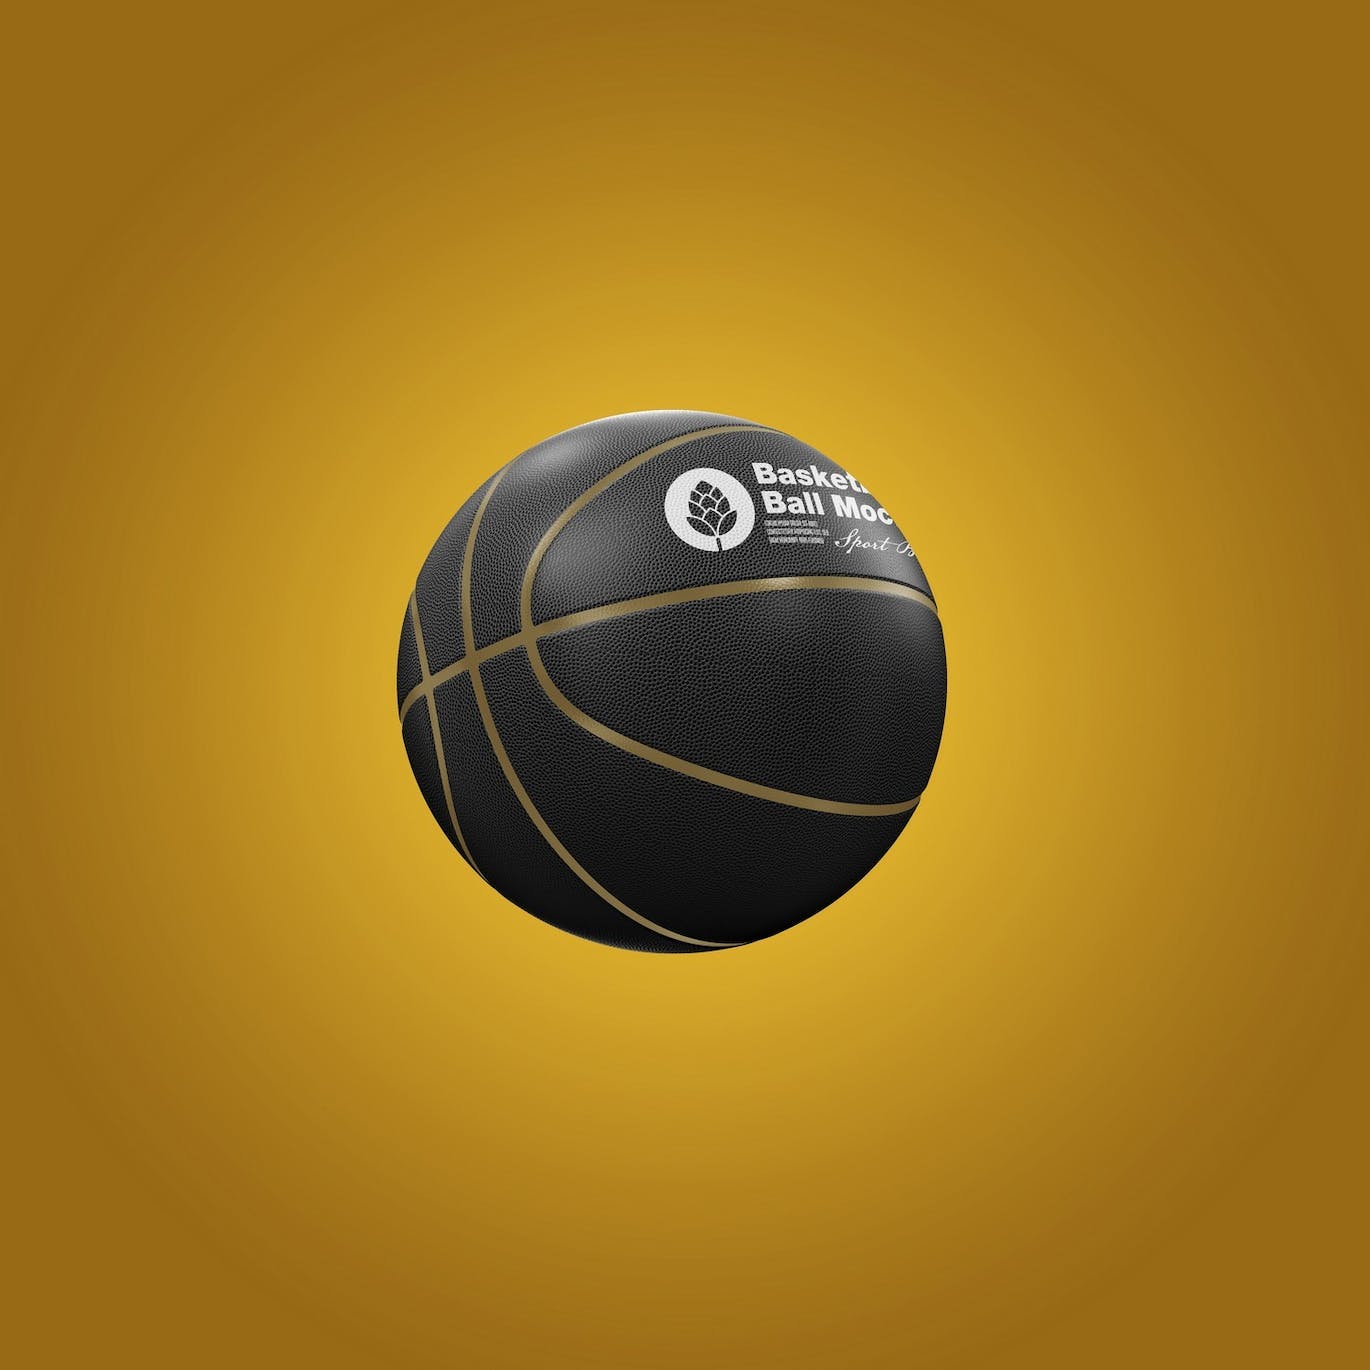 篮球运动品牌设计样机 Basketball Ball Mockup 样机素材 第8张